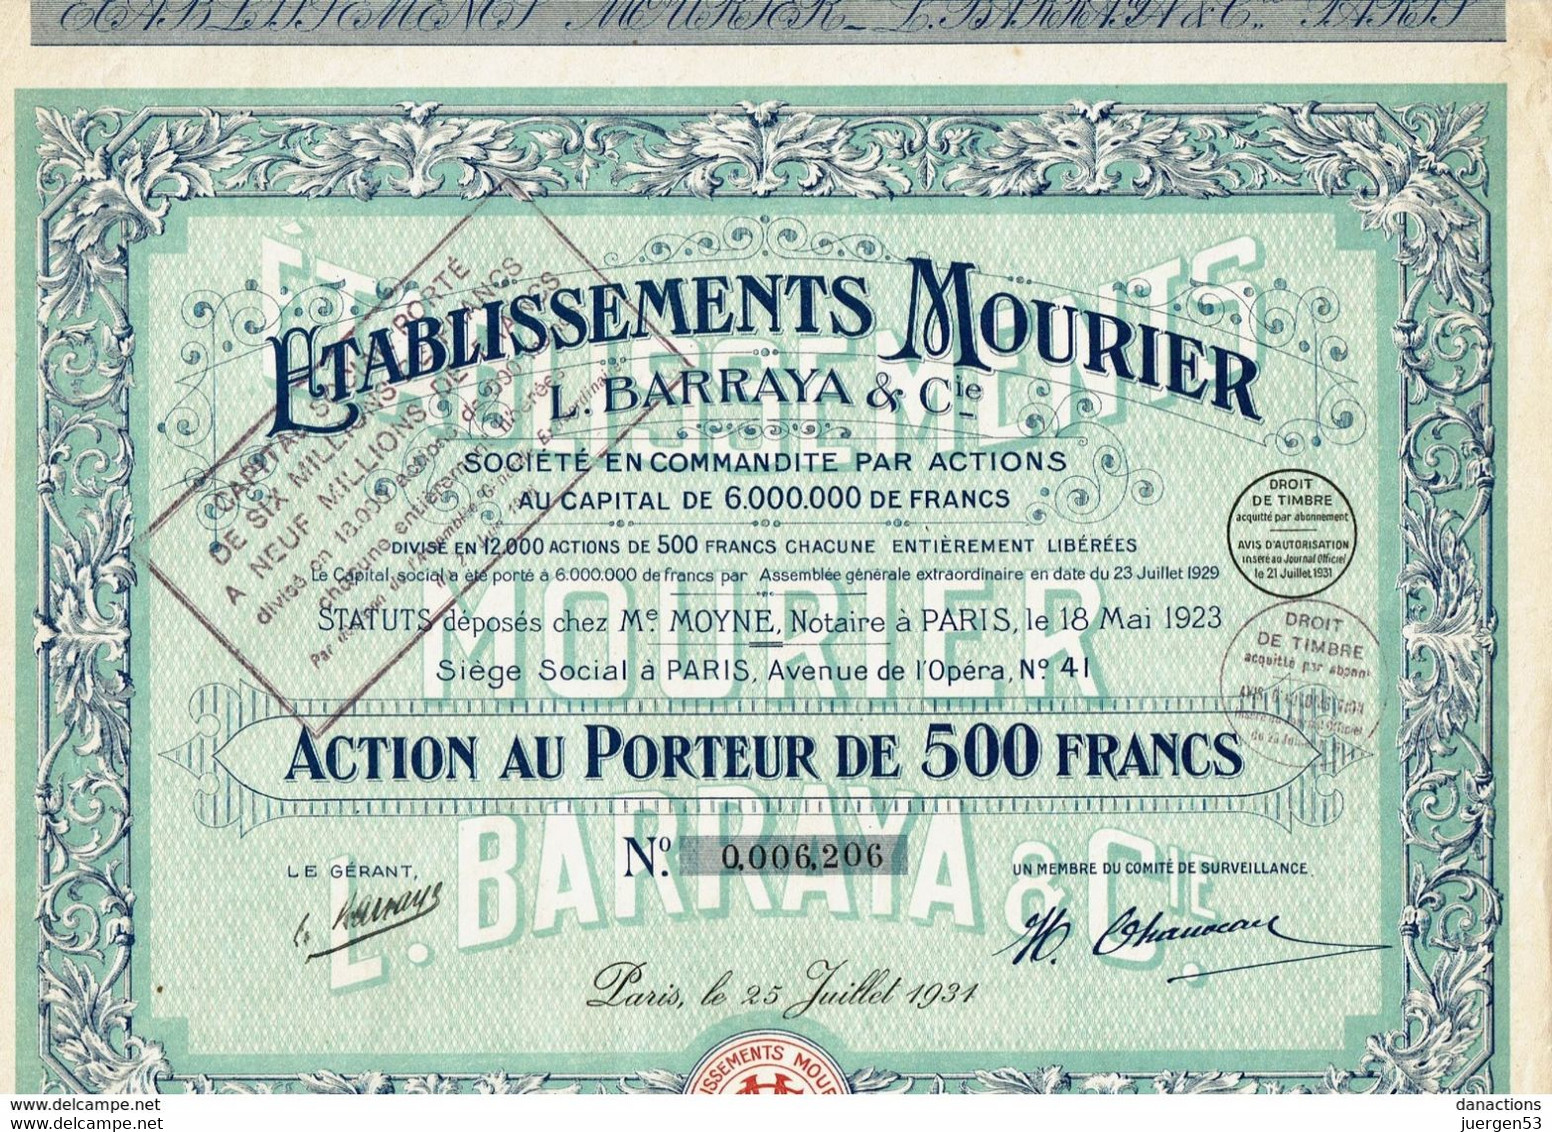 Ets. MOURIER L. BARRAYA & Cie – 1931 - Tourism